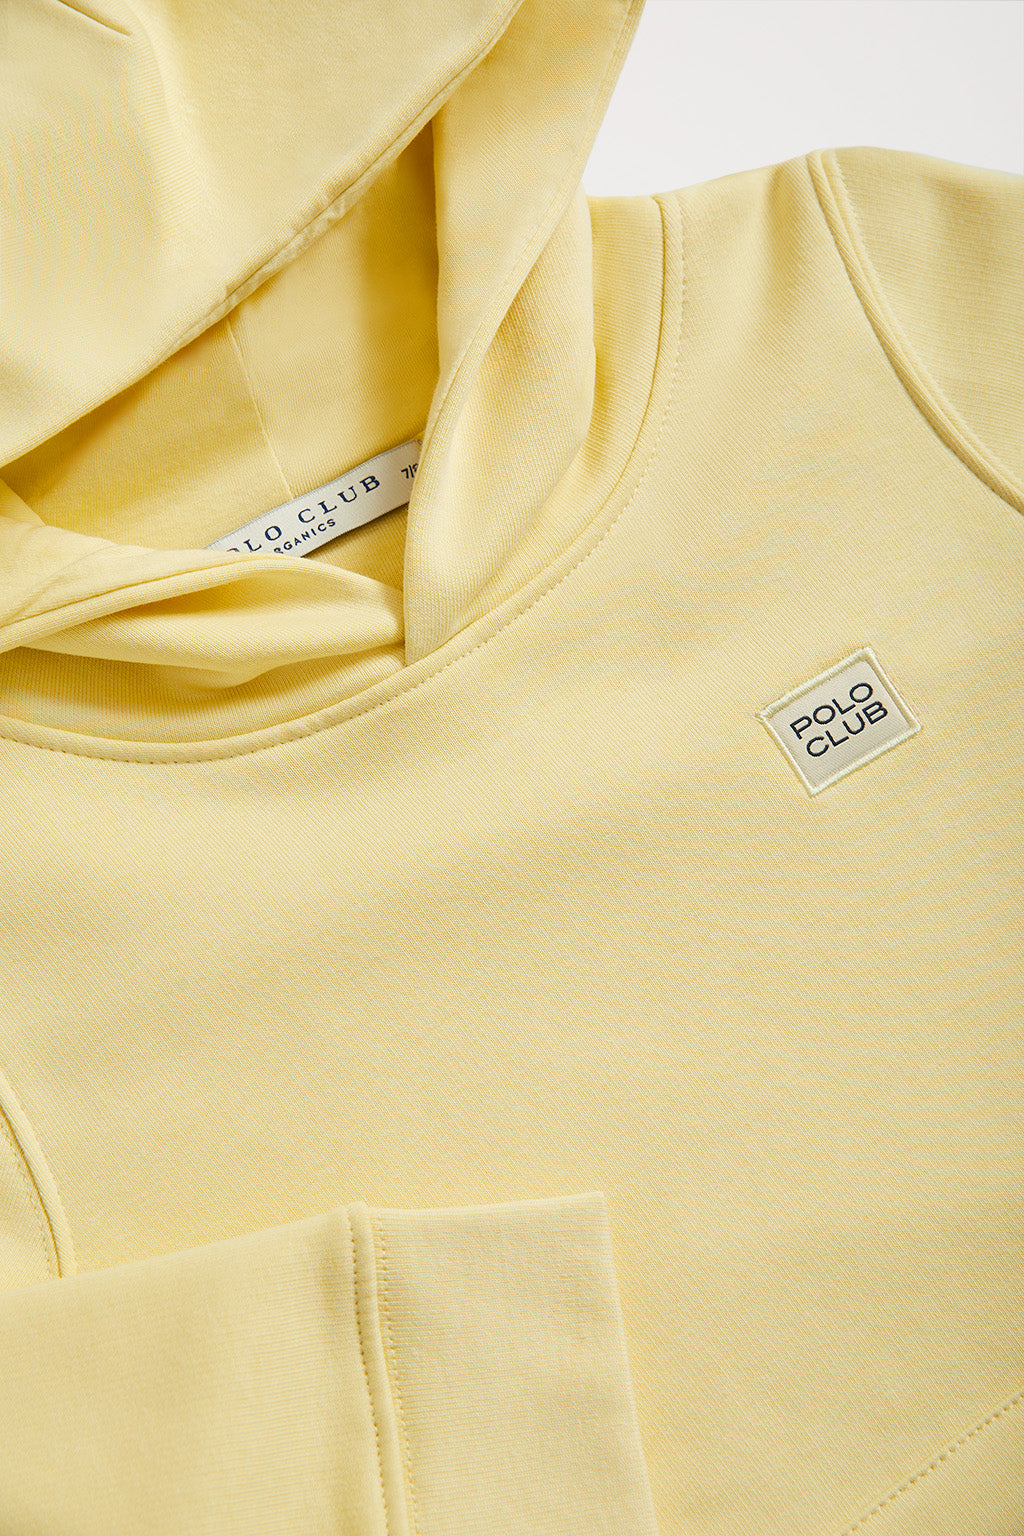 Sudadera orgánica de capucha y bolsillos amarilla Neutrals kids con logo